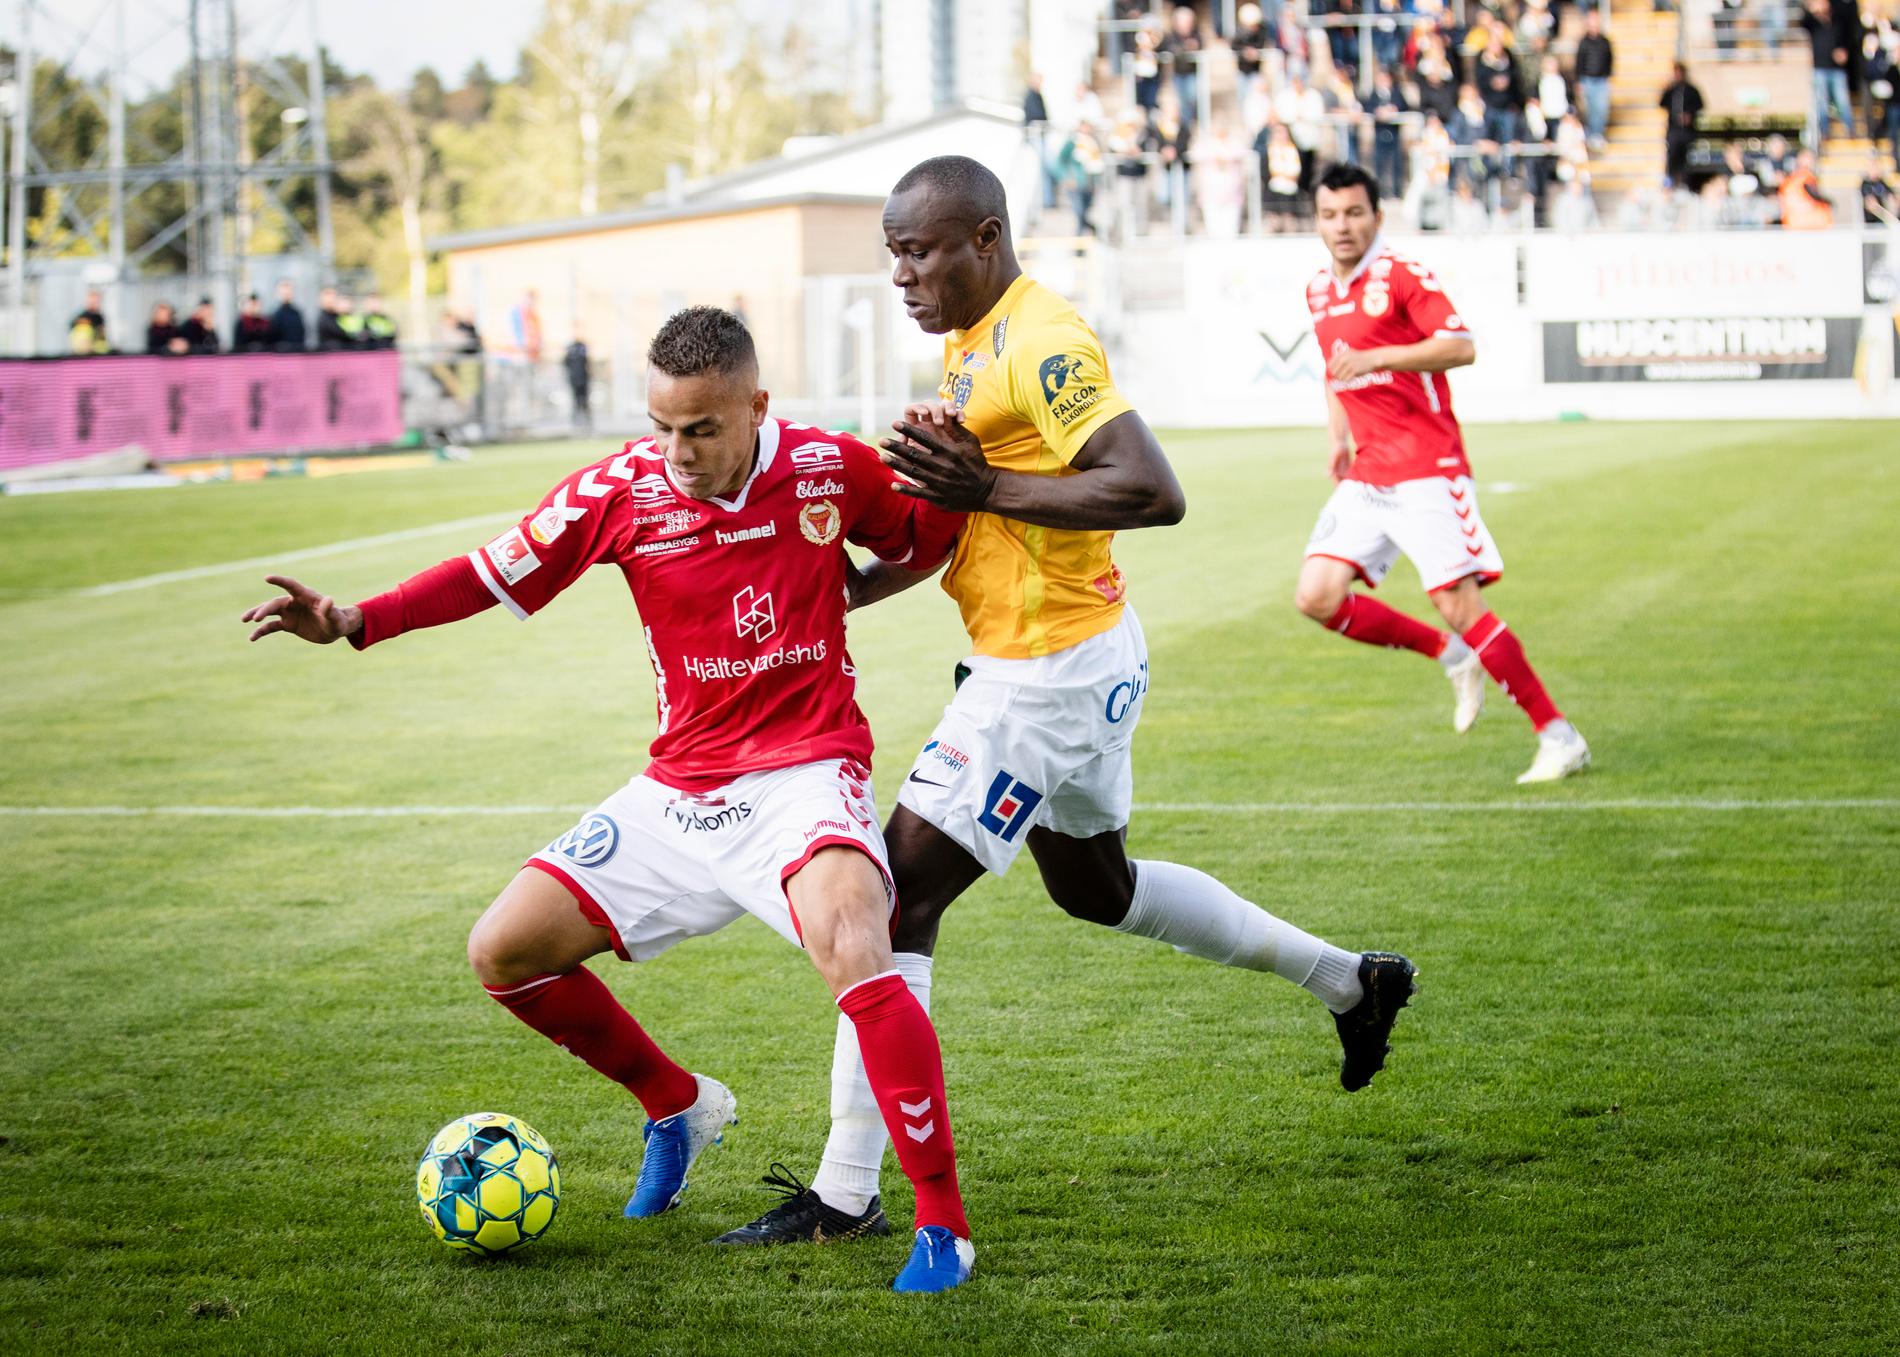 Kalmars brasse Rafinha, som gjorde sin första match från start, mot Falkenbergs Nsima Peter under lördagens fotbollsmatch i allsvenskan mellan Falkenberg och Kalmar.